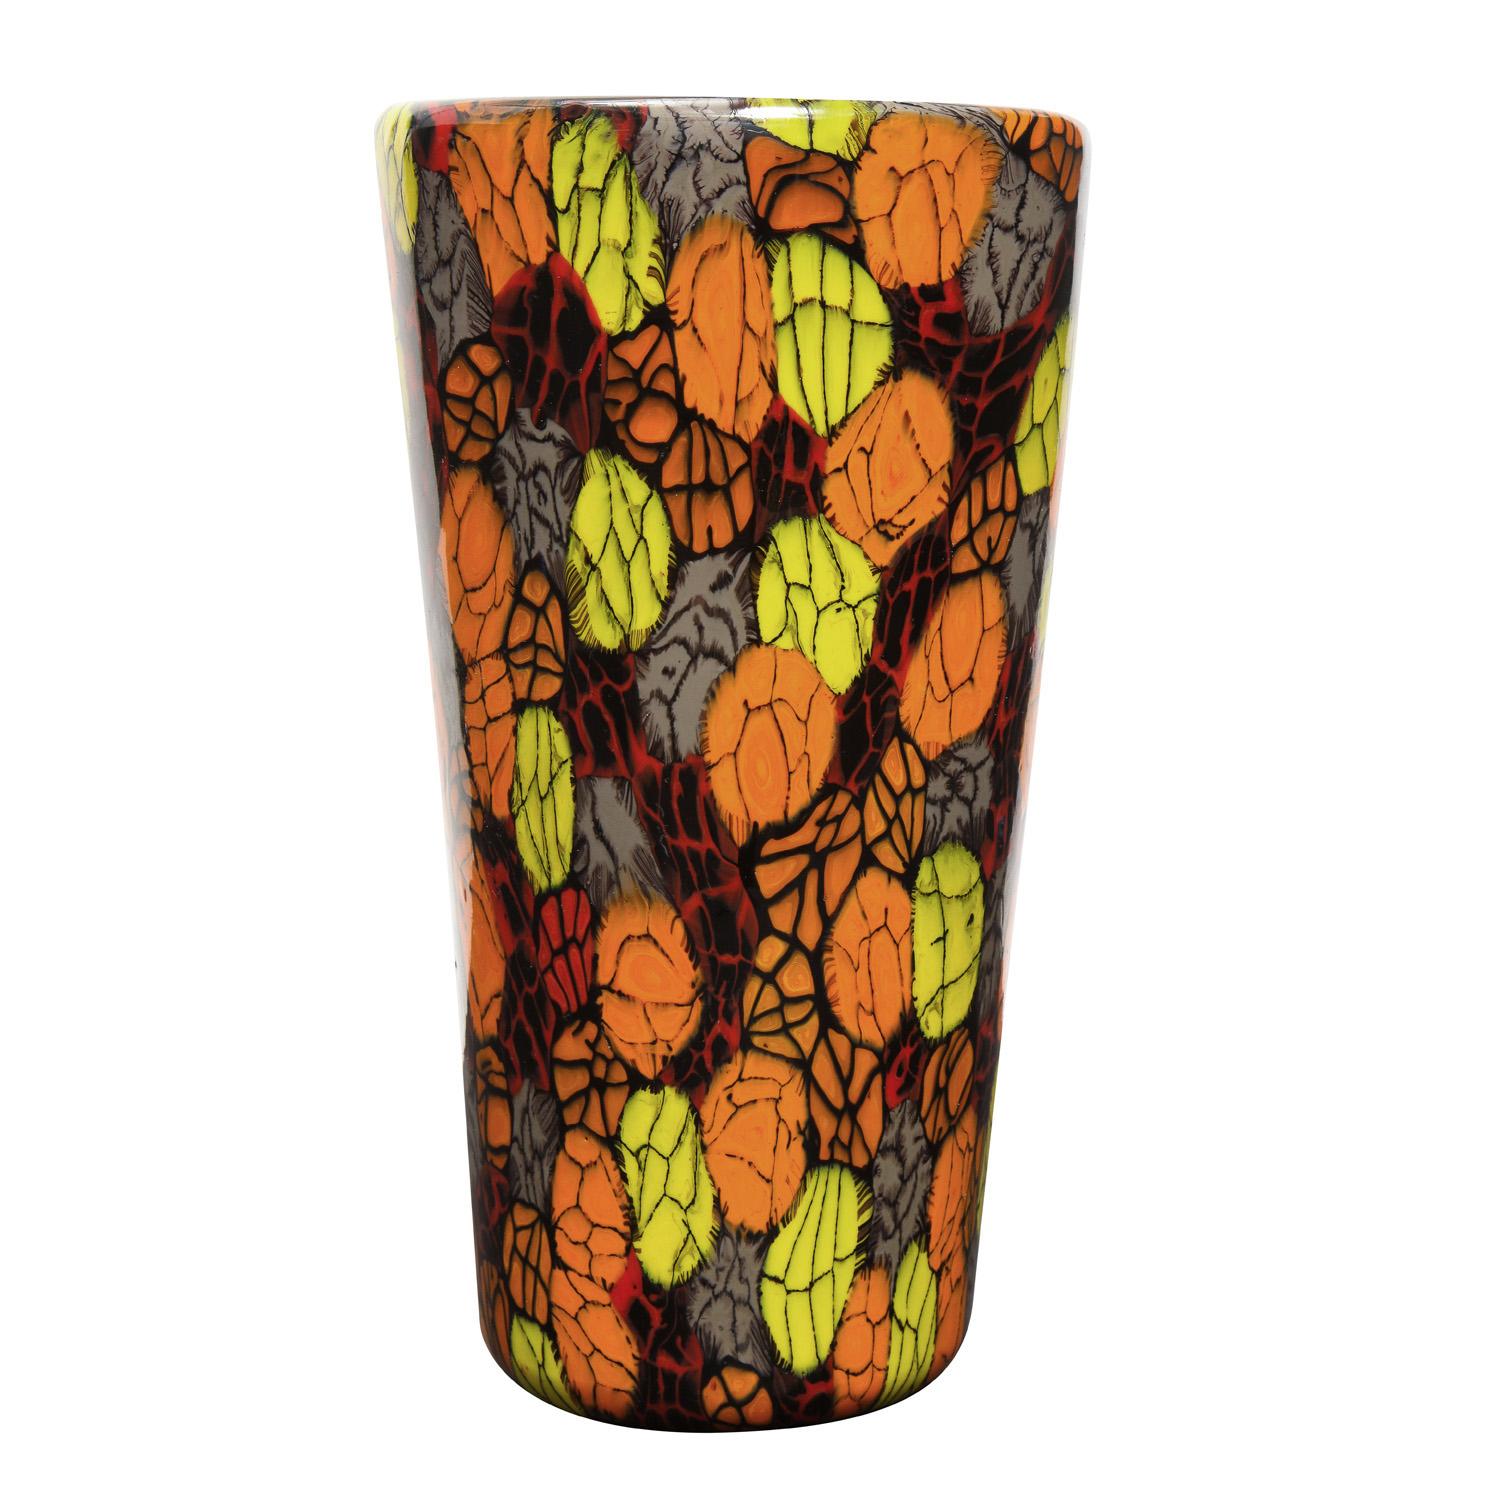 Vase en verre soufflé à la main avec une murrine rouge, orange, jaune et taupe unique, par Vittorio Ferro, Murano, Italie, vers 1994. Vittorio Ferro, né en 1932, était un maître verrier de premier ordre qui a travaillé de nombreuses années chez